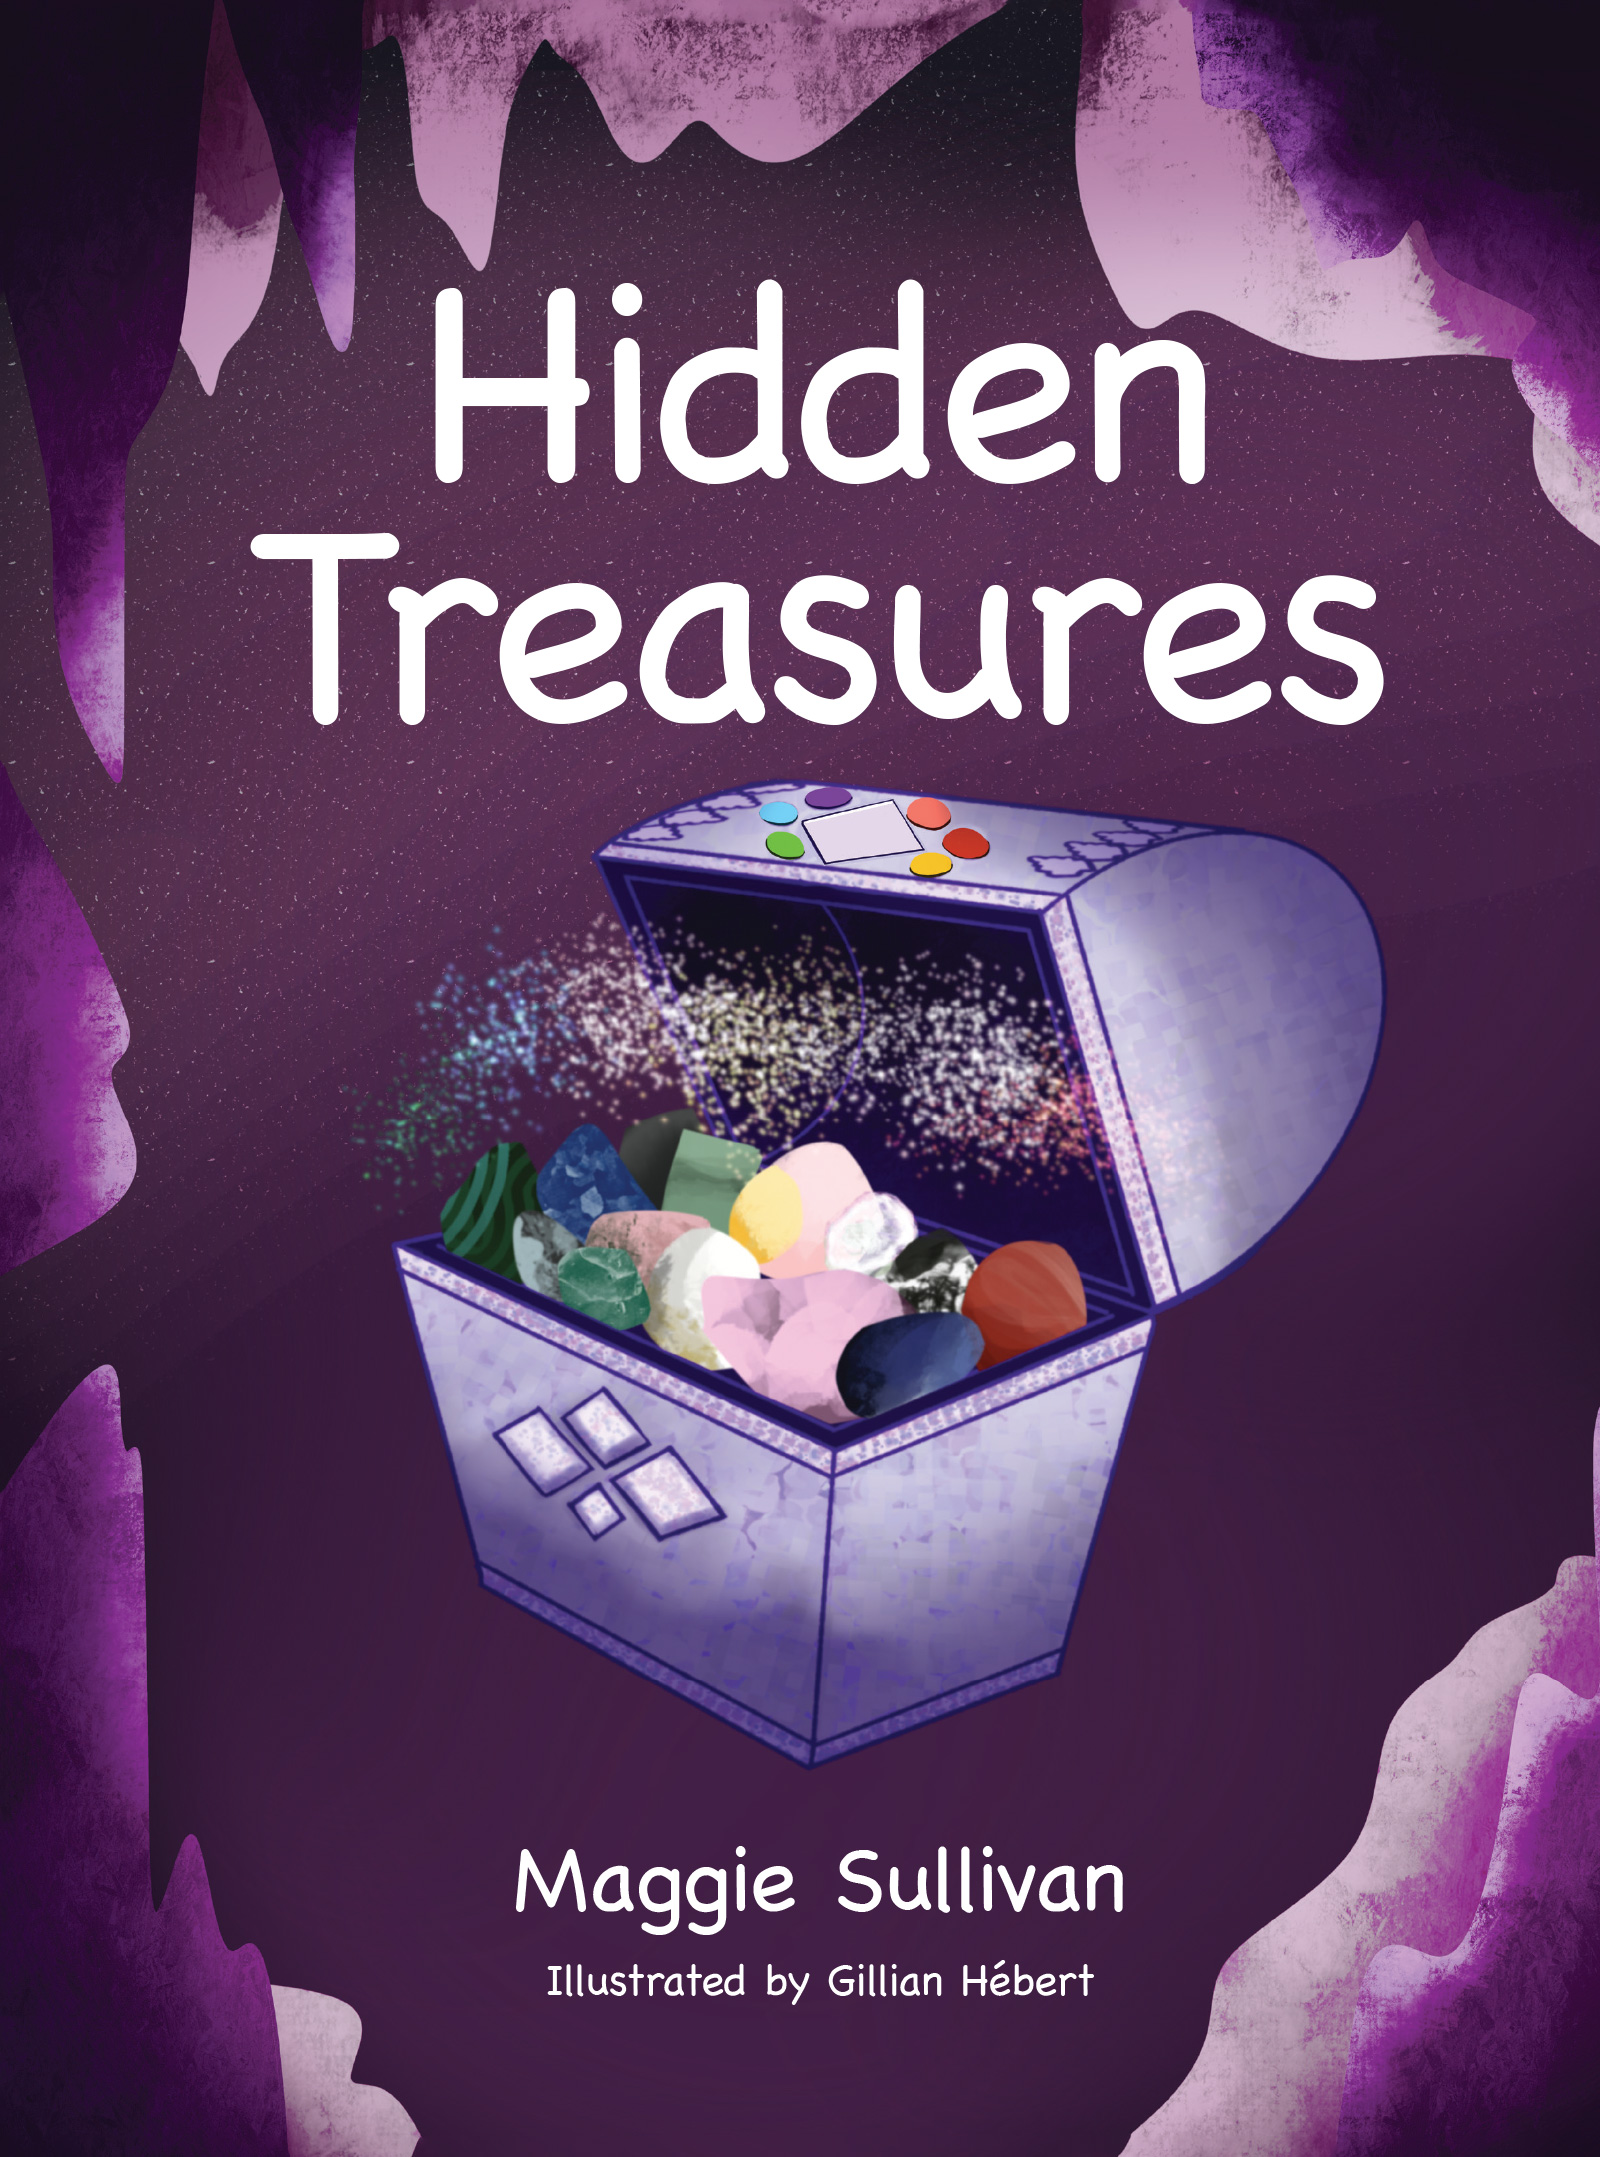 "Hidden Treasures" by Maggie Sullivan Book Cover